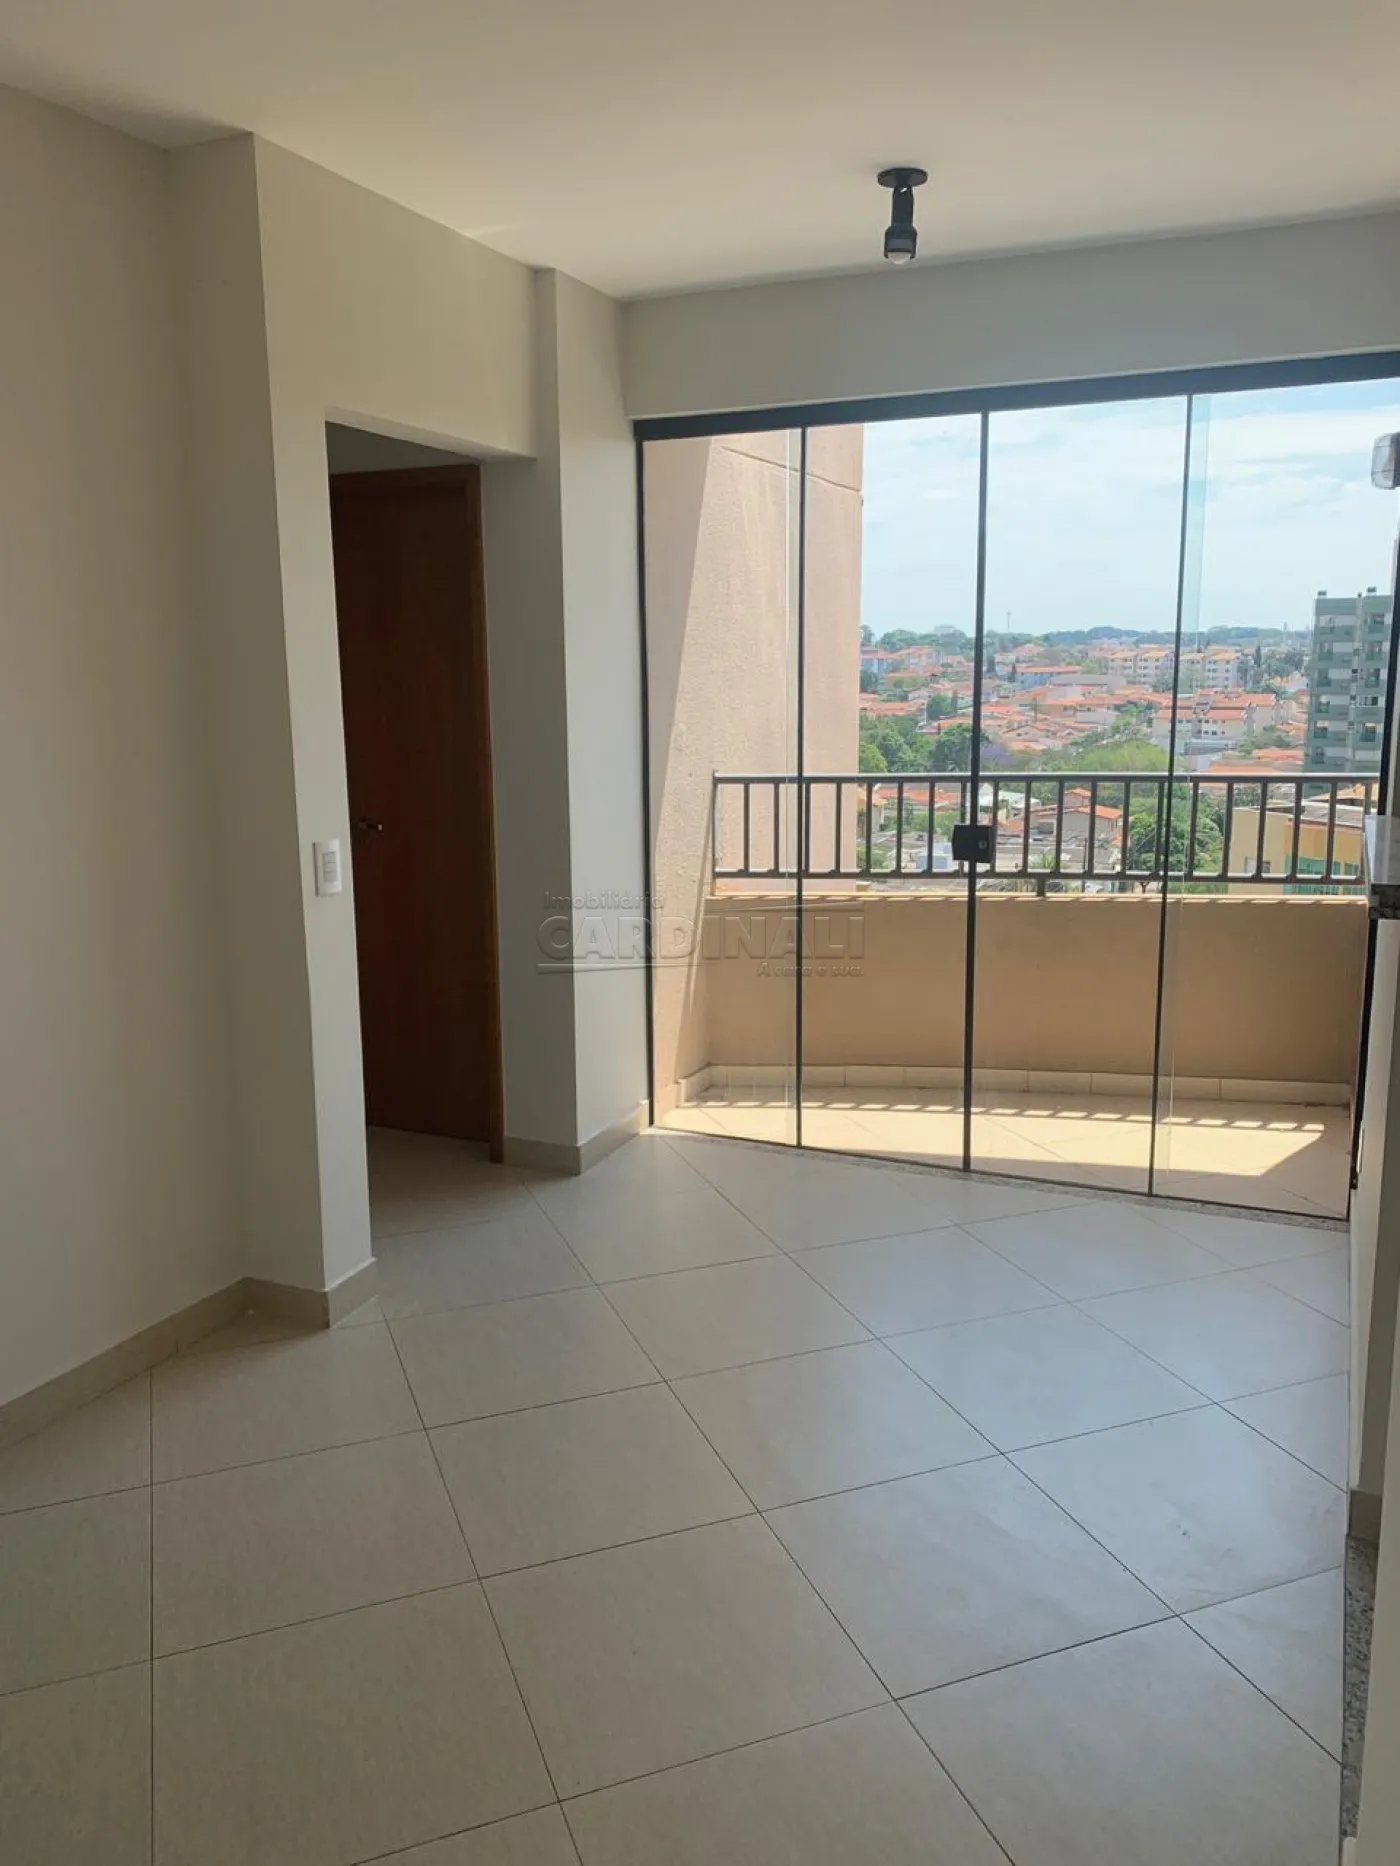 Apartamento / Padrão em São Carlos , Comprar por R$330.000,00